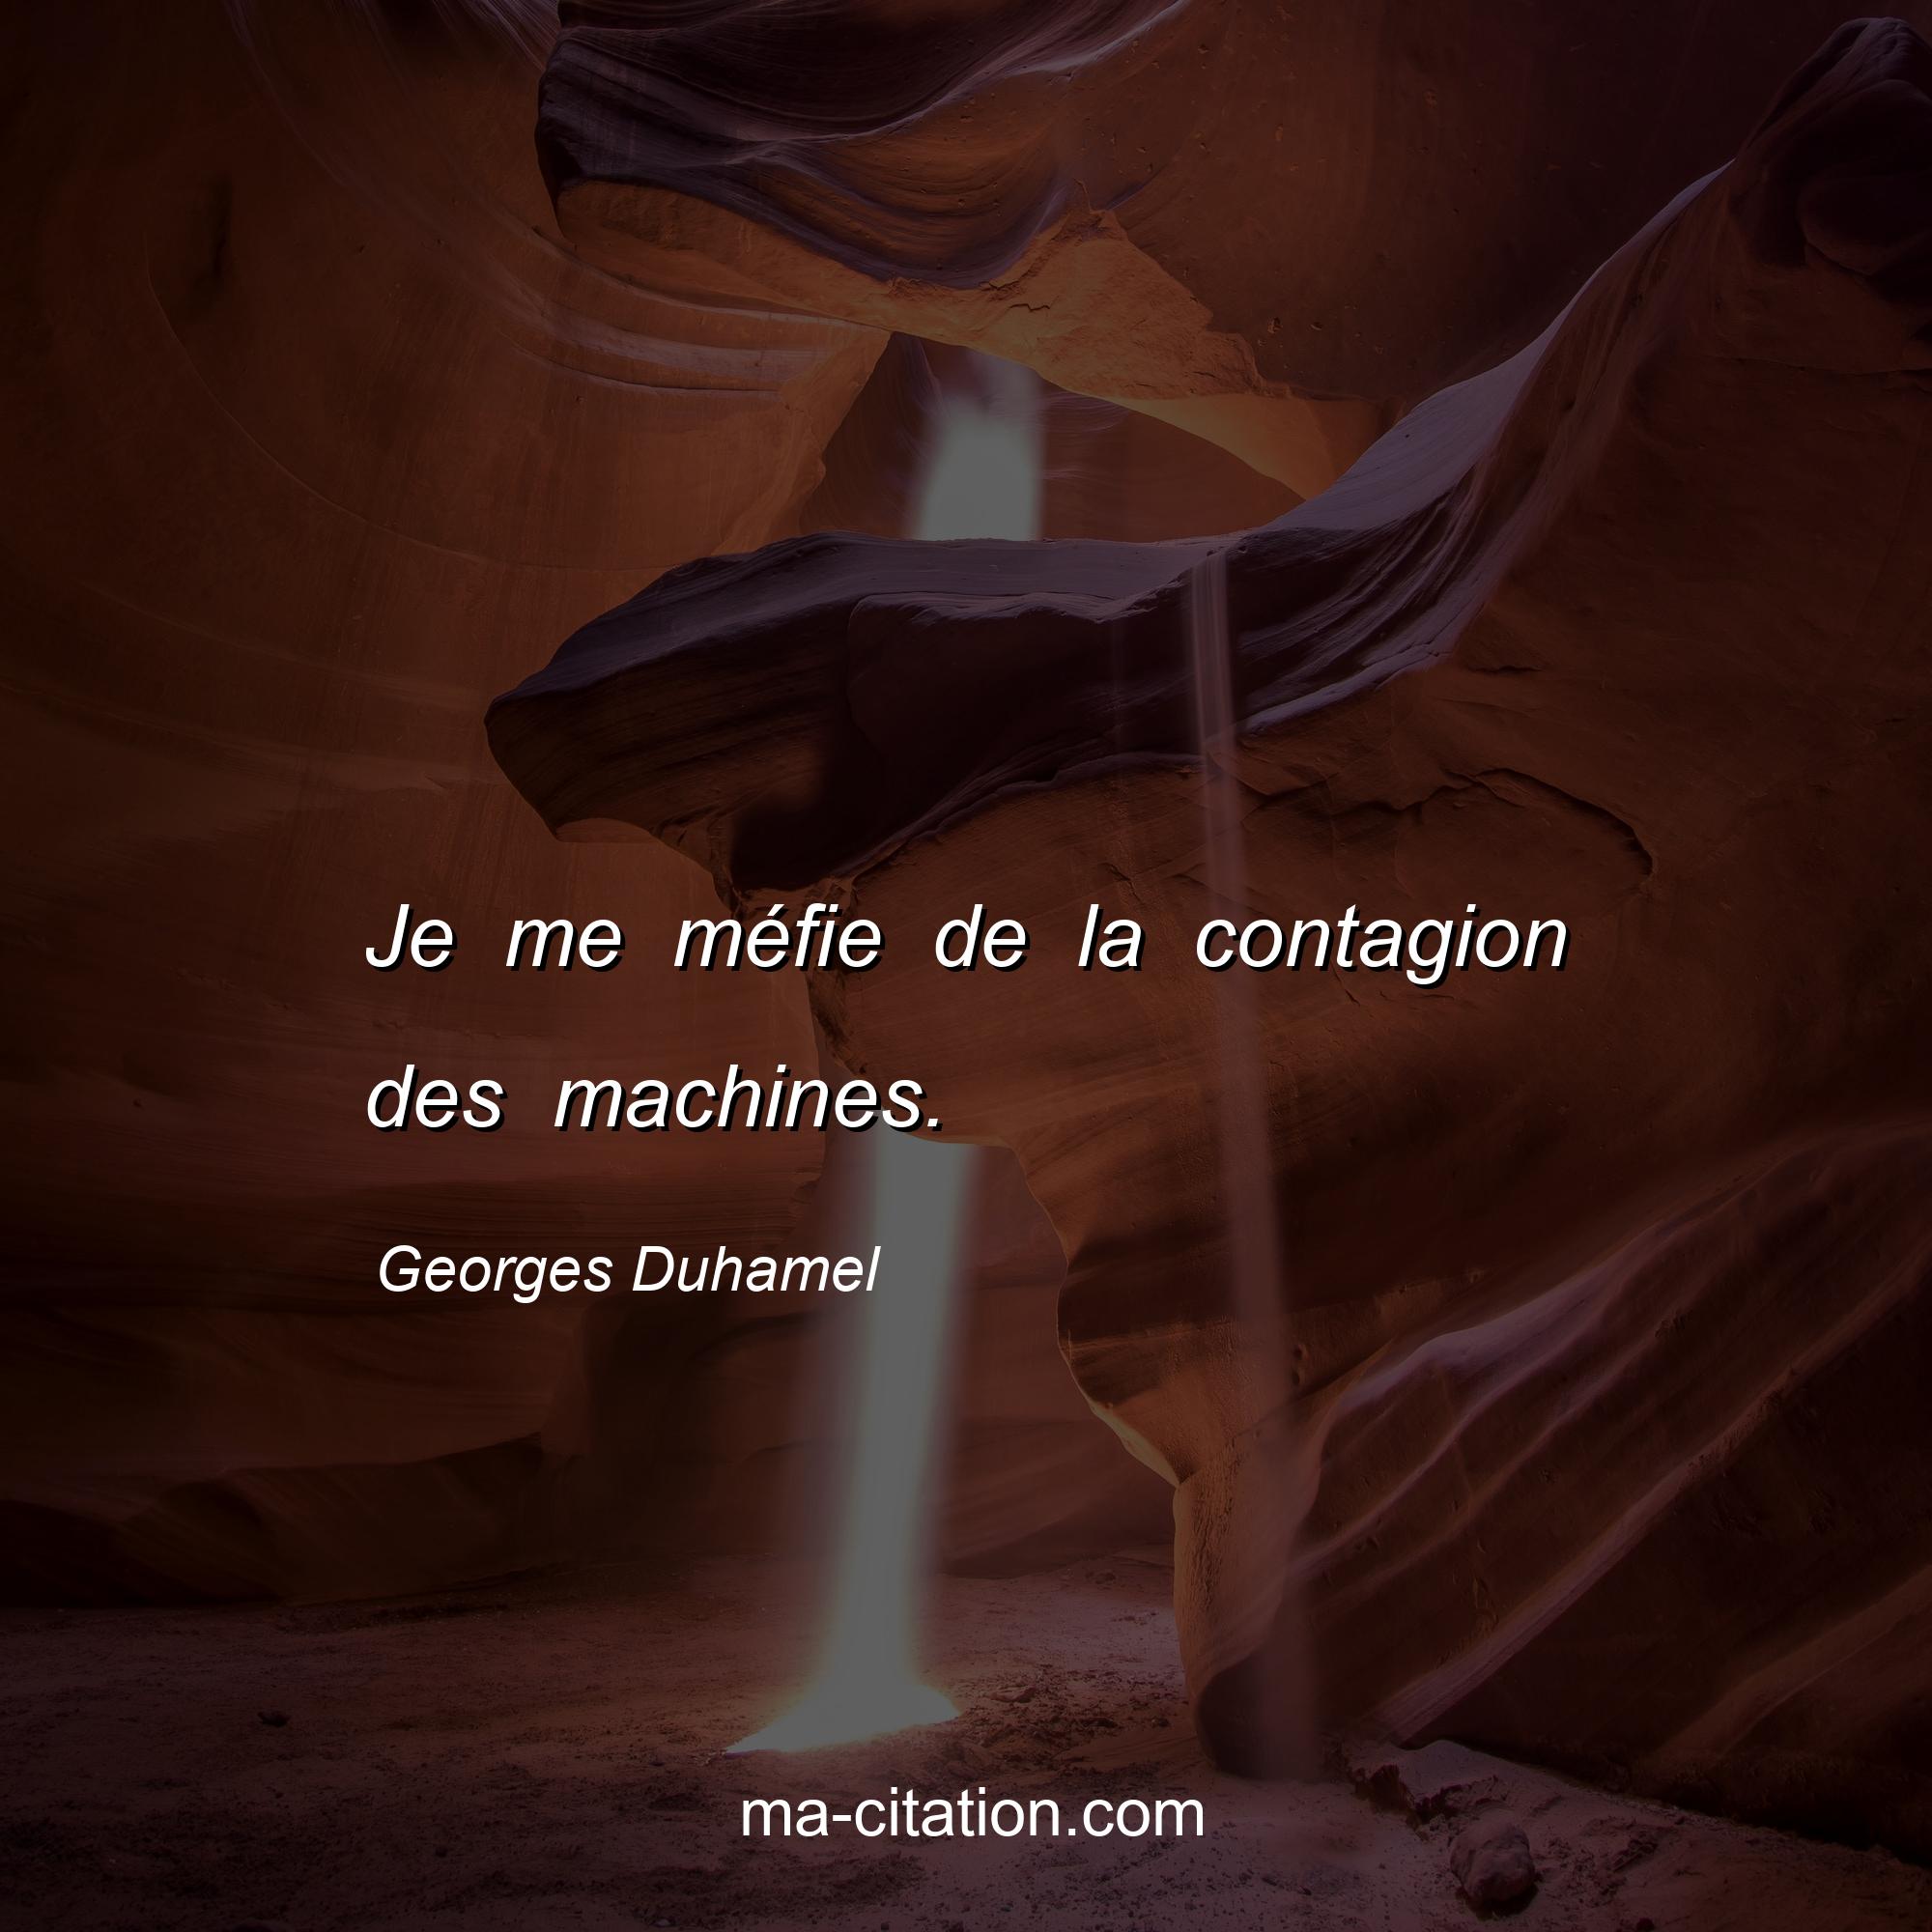 Georges Duhamel : Je me méfie de la contagion des machines.